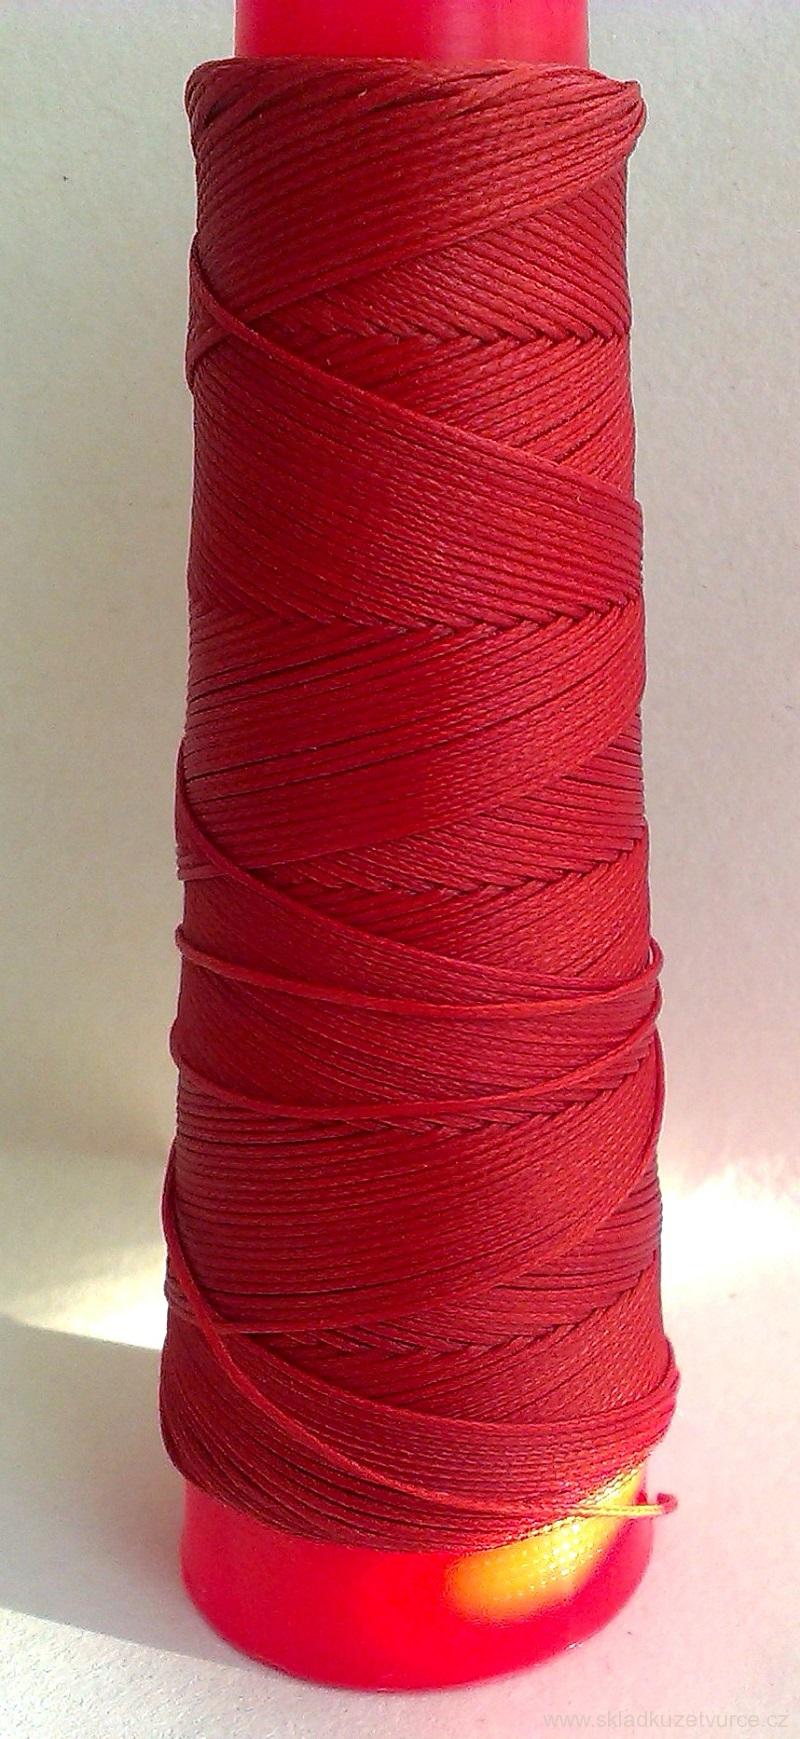 Polyesterová nit EUROJET SLAM červený pomeranč  voskovaná 0,8 mm